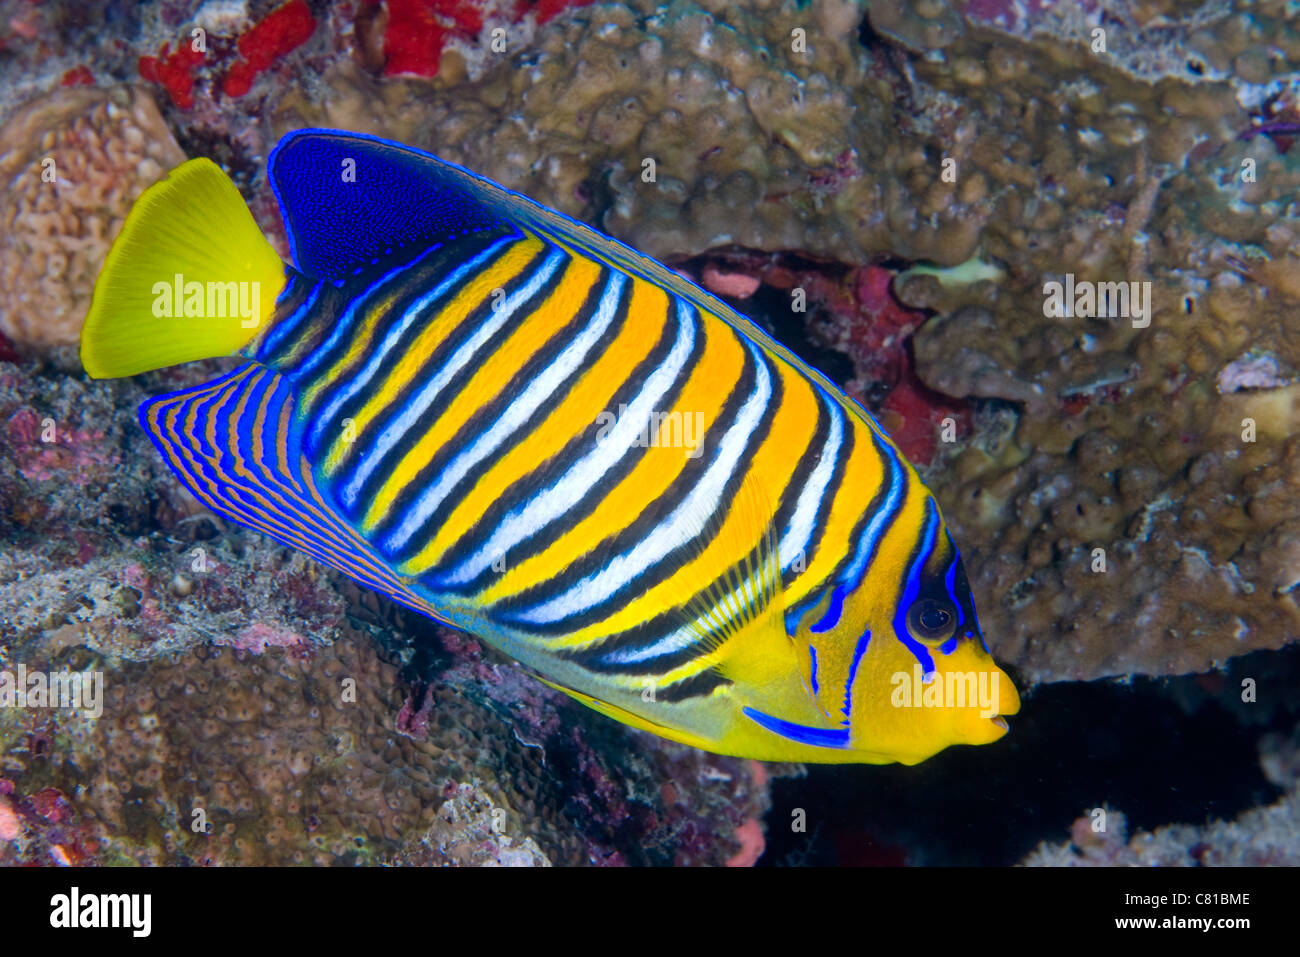 Les Maldives, la mer et la vie sous-marine, poissons anges, poissons de récifs de corail, récif tropical, l'océan, sur la mer, plongée, plongée sous-marine, fotosub, couleur Banque D'Images